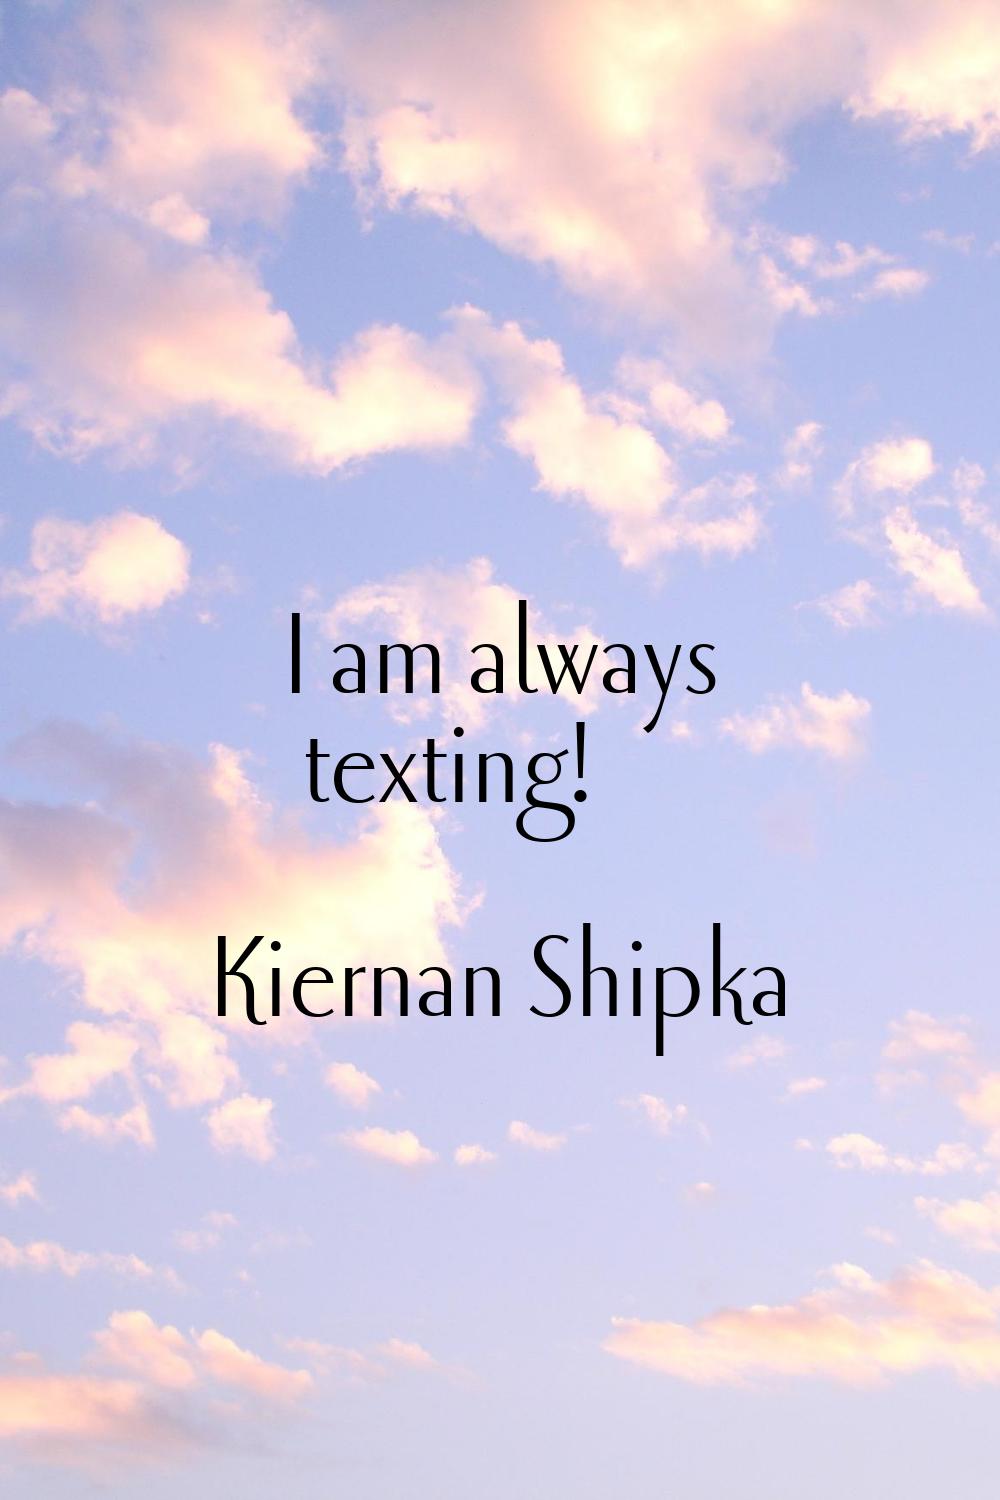 I am always texting!